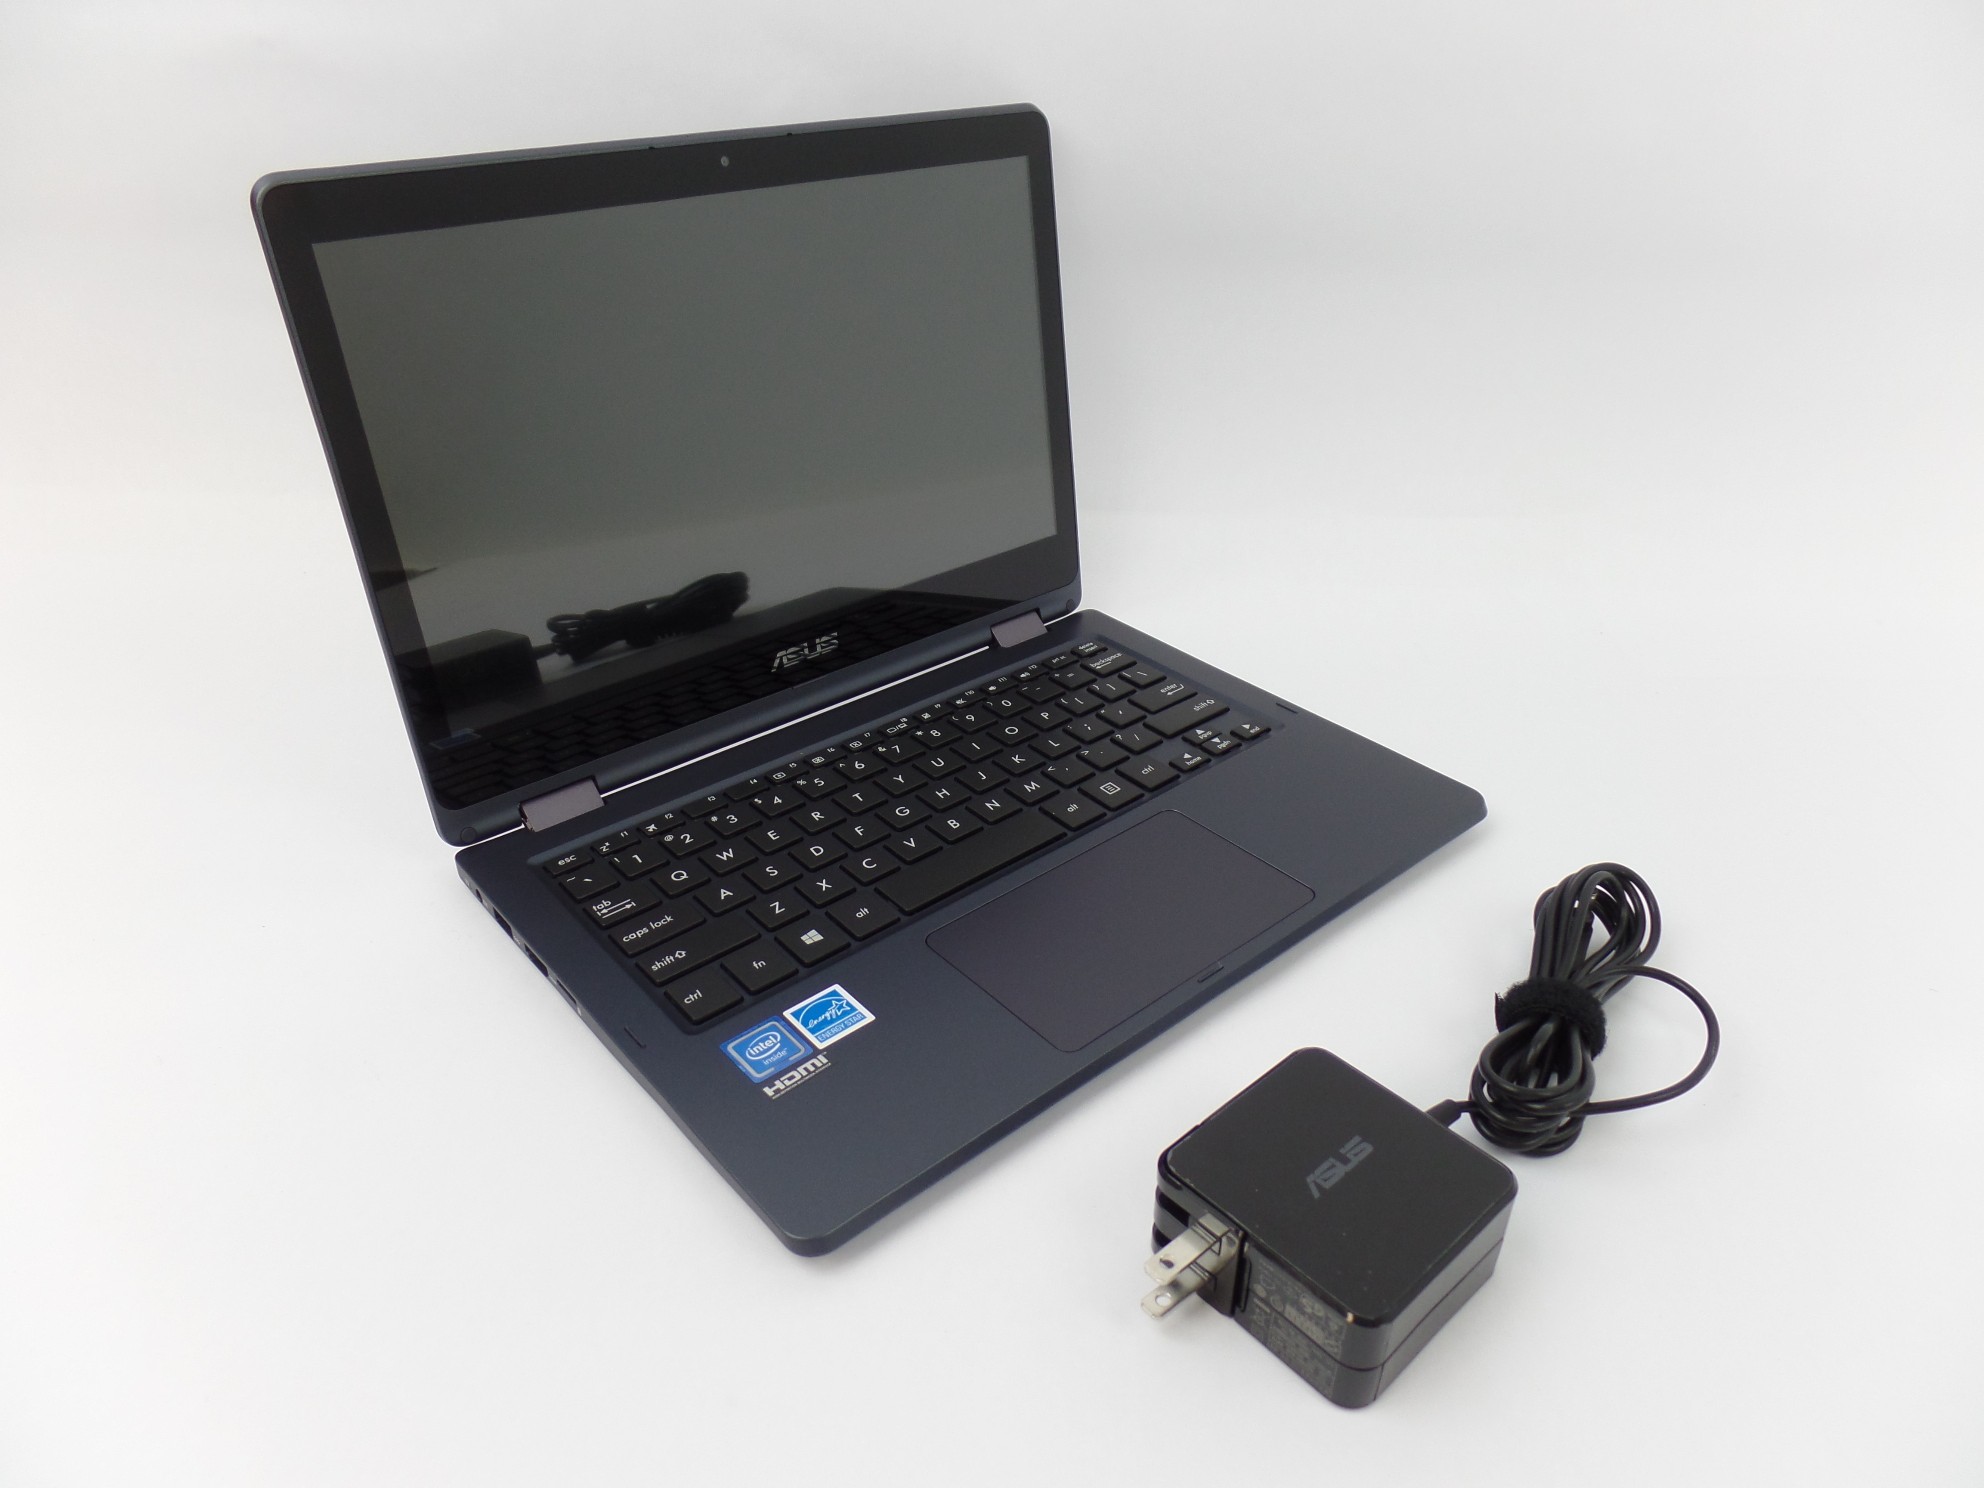 Asus J202NA-DH01T VivoBook Flip 12" HD N3350 1.1GHz 4GB 64GB W10H 2in1 Laptop U